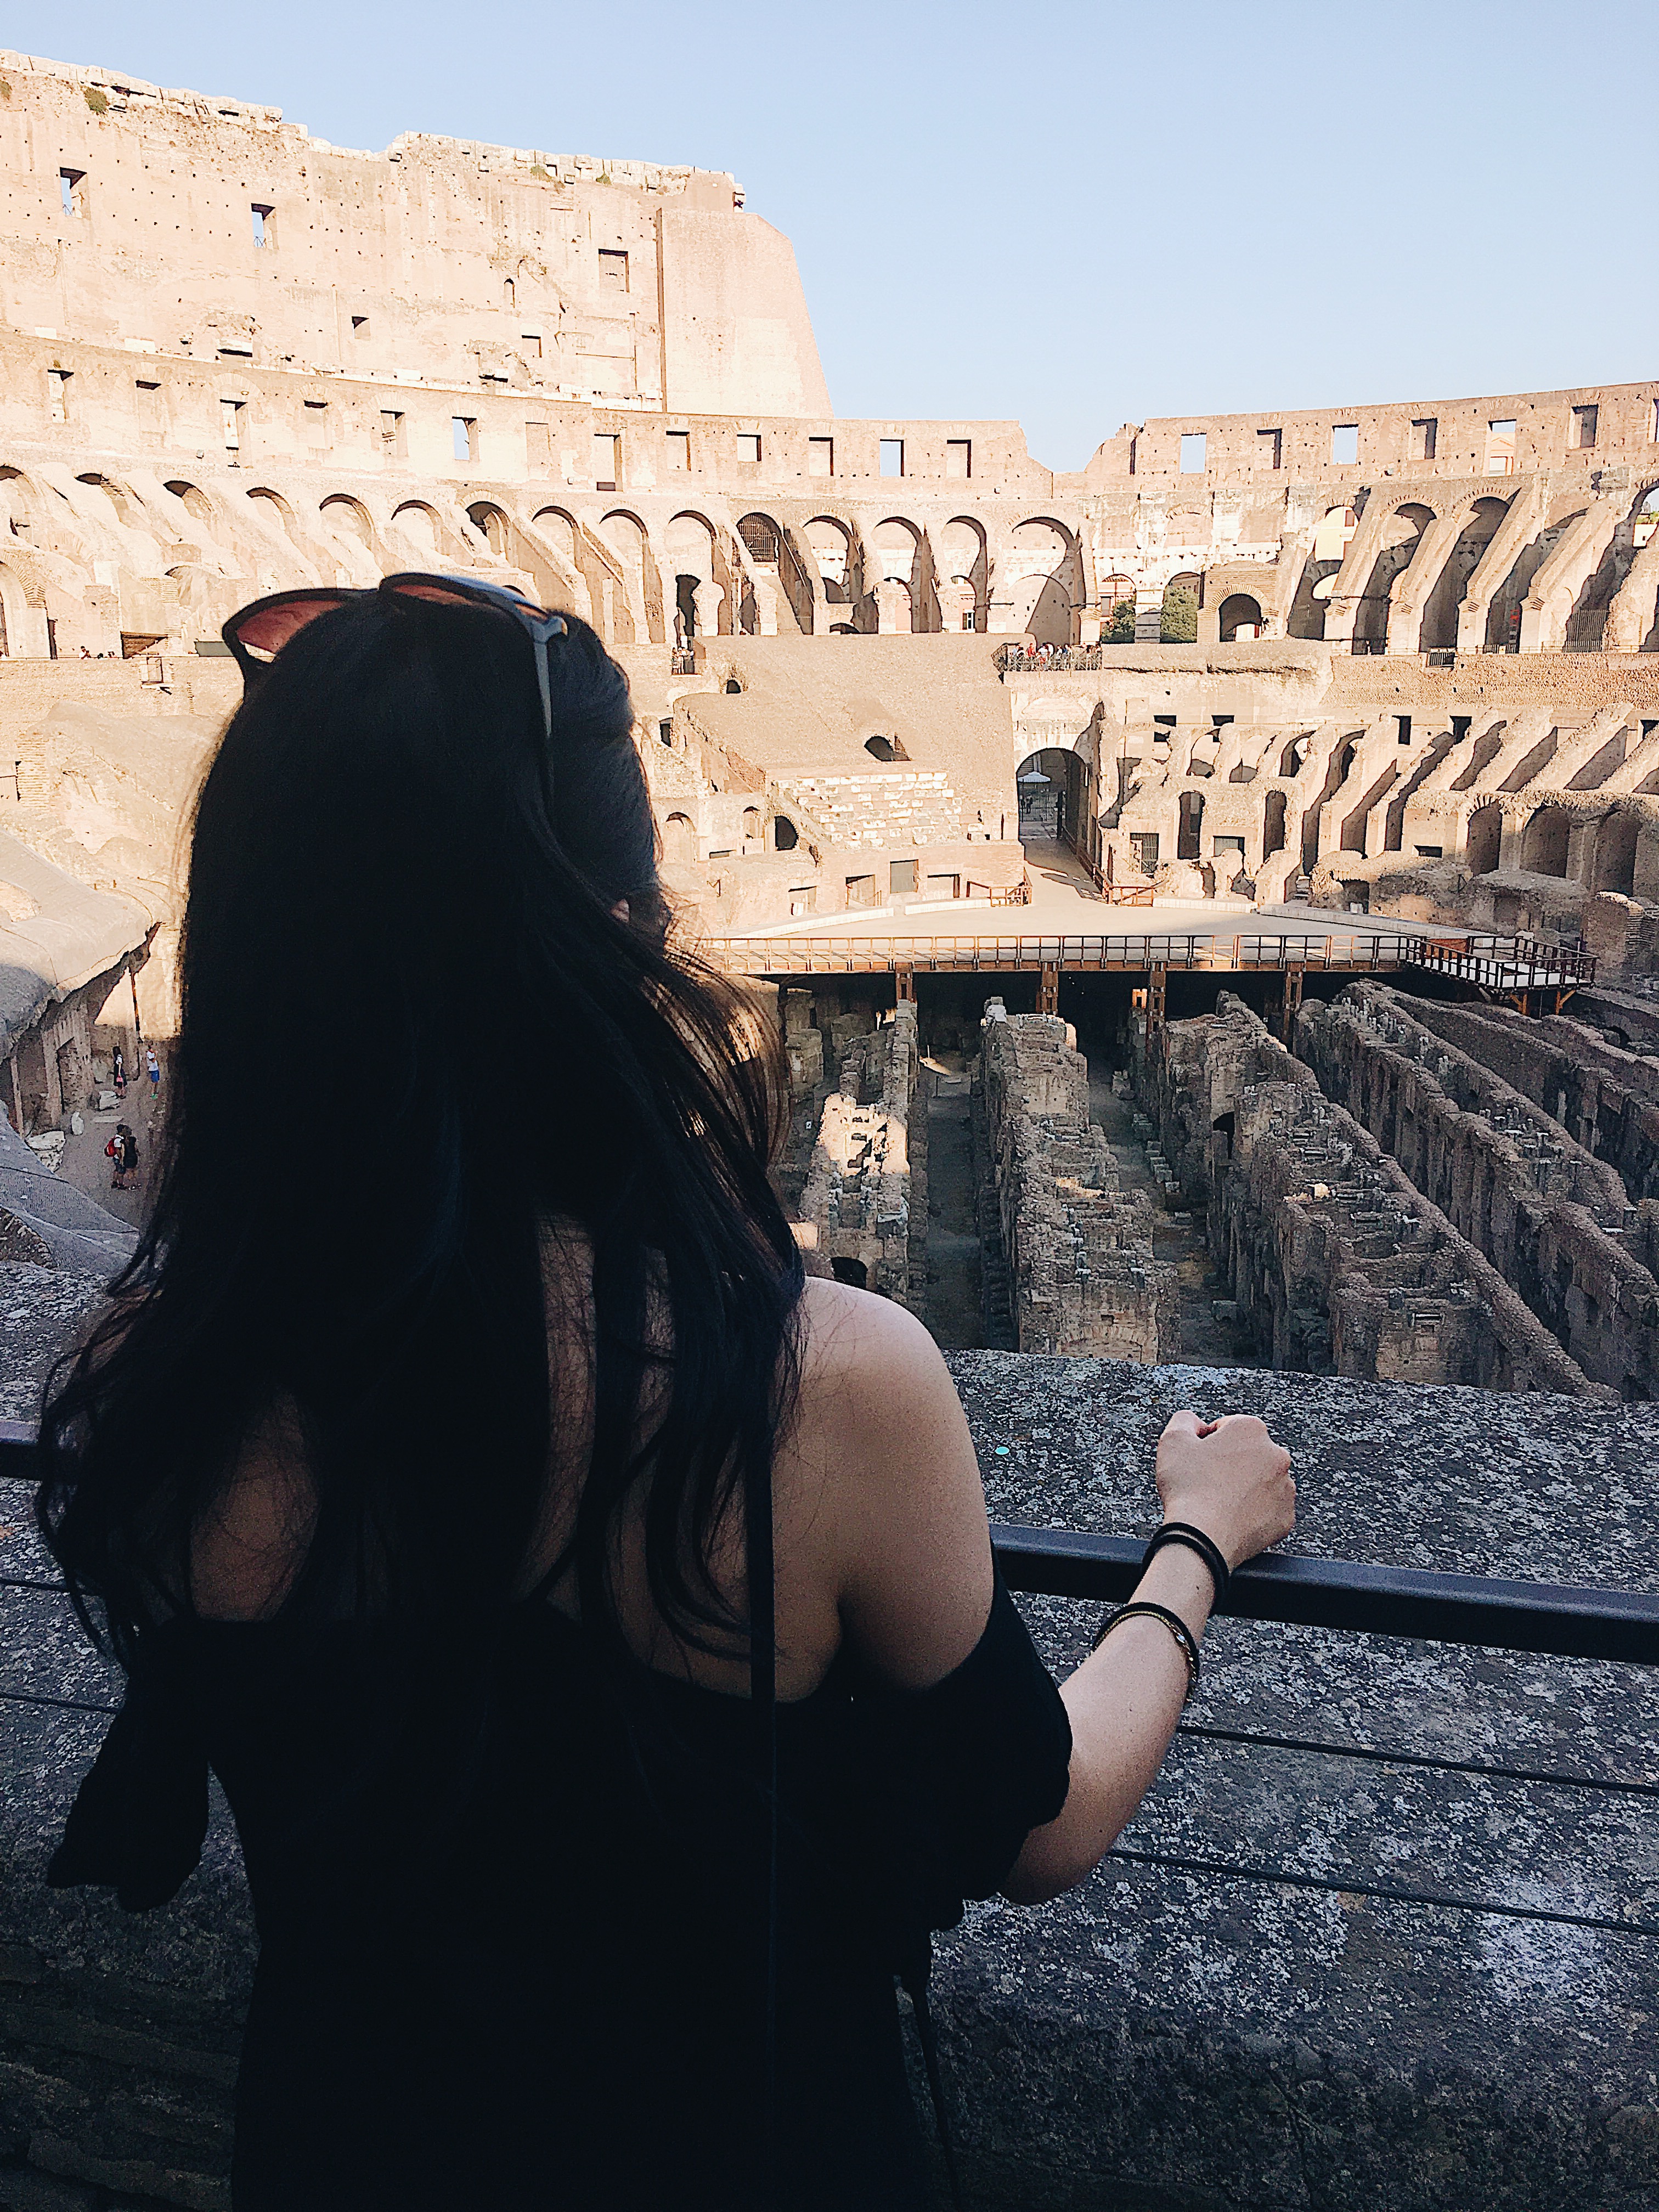 Inside the colosseum Rome